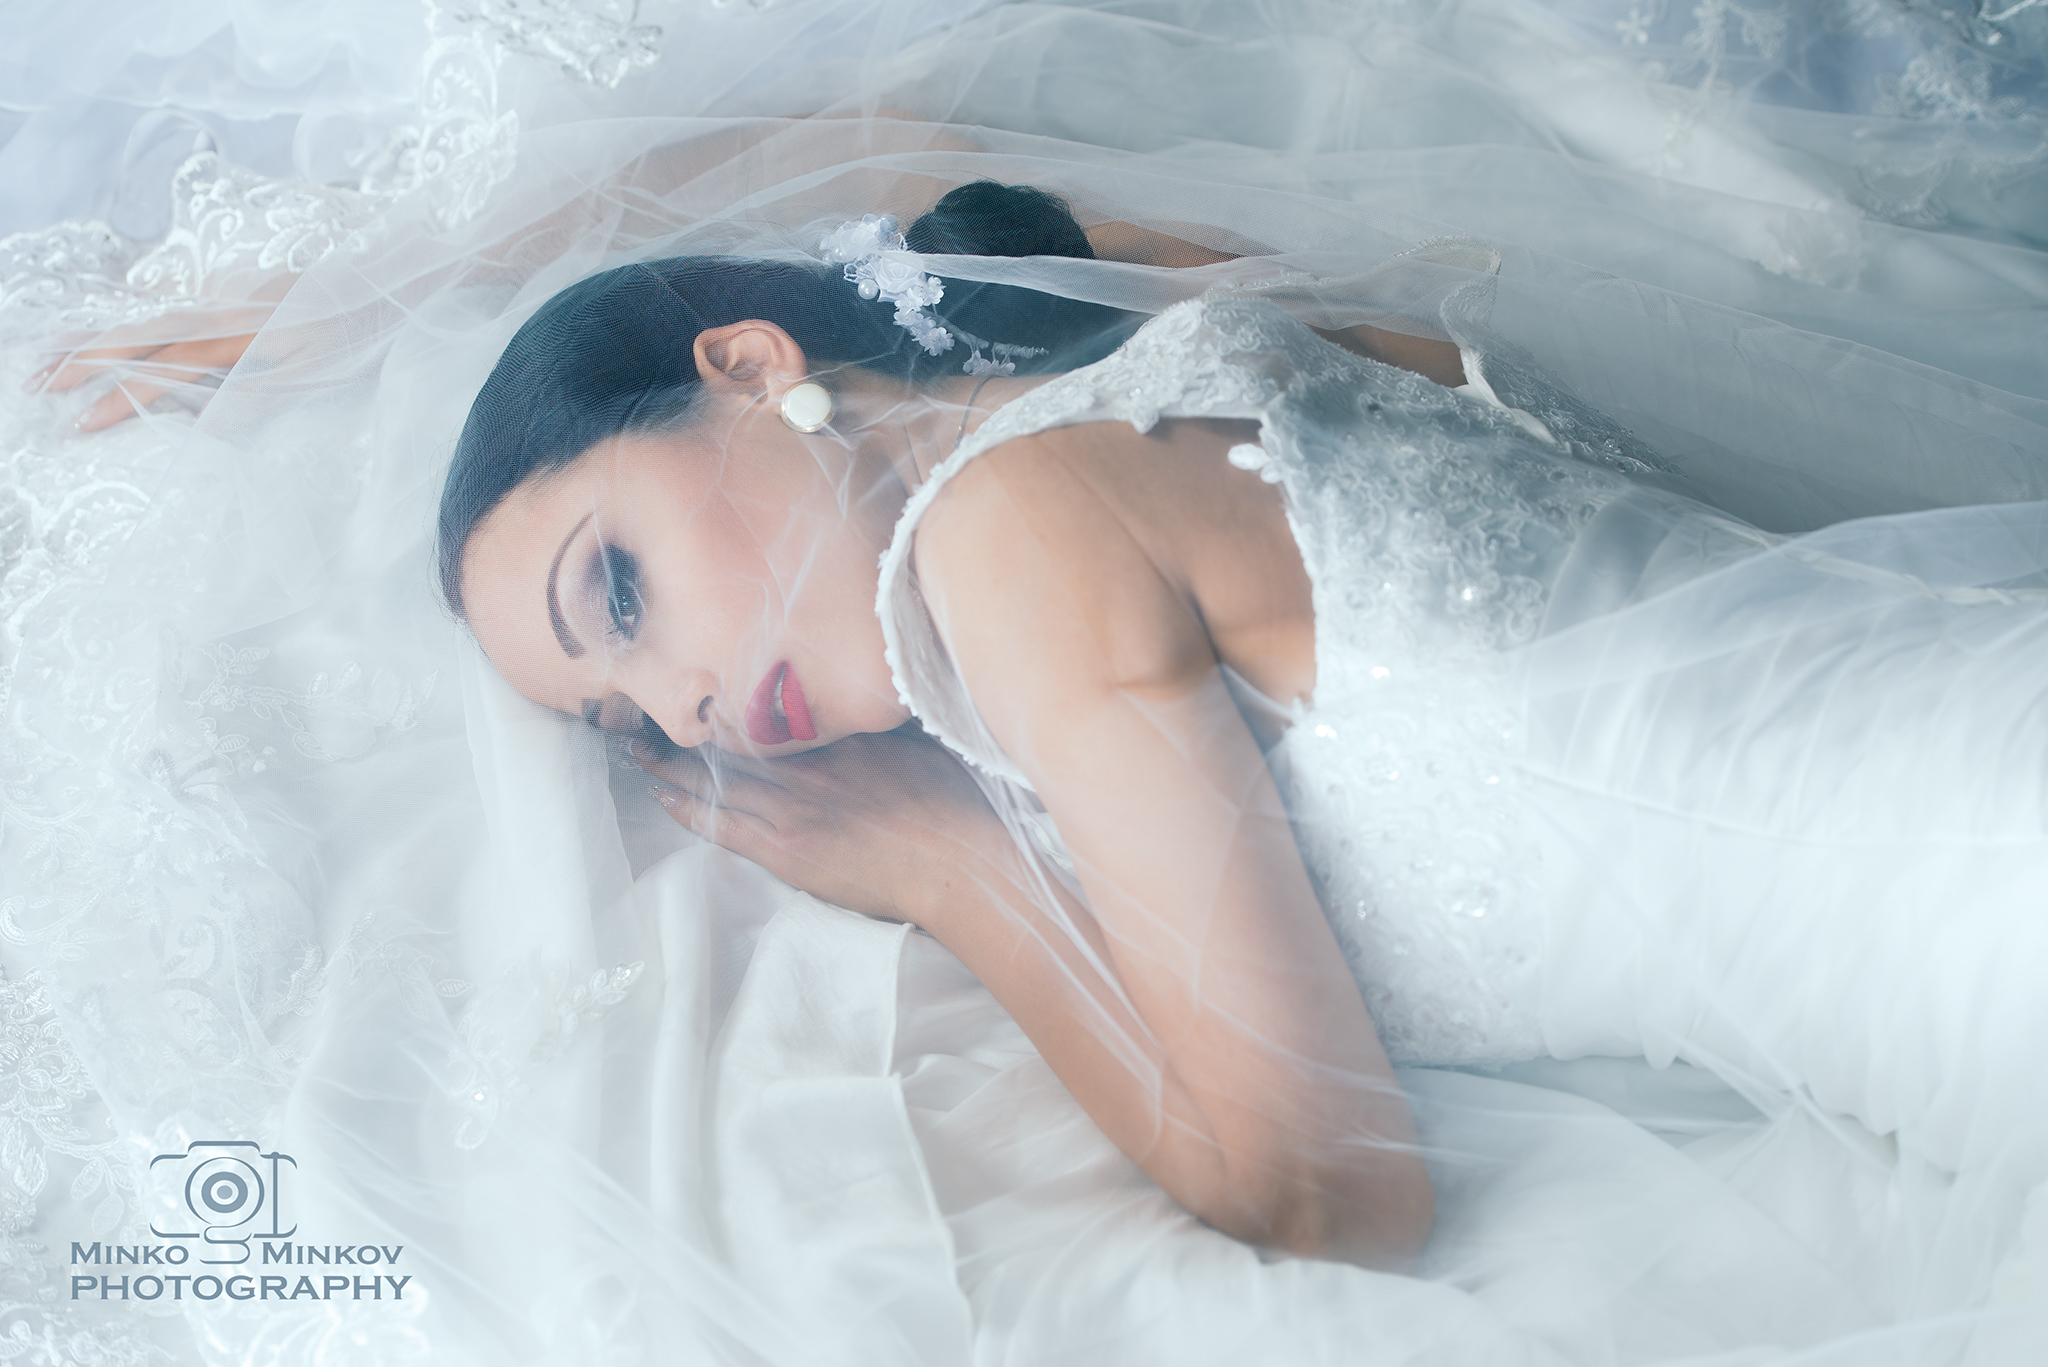 Minko Minkov Flowers White Dress Brides Looking Away Women Frock 2048x1367